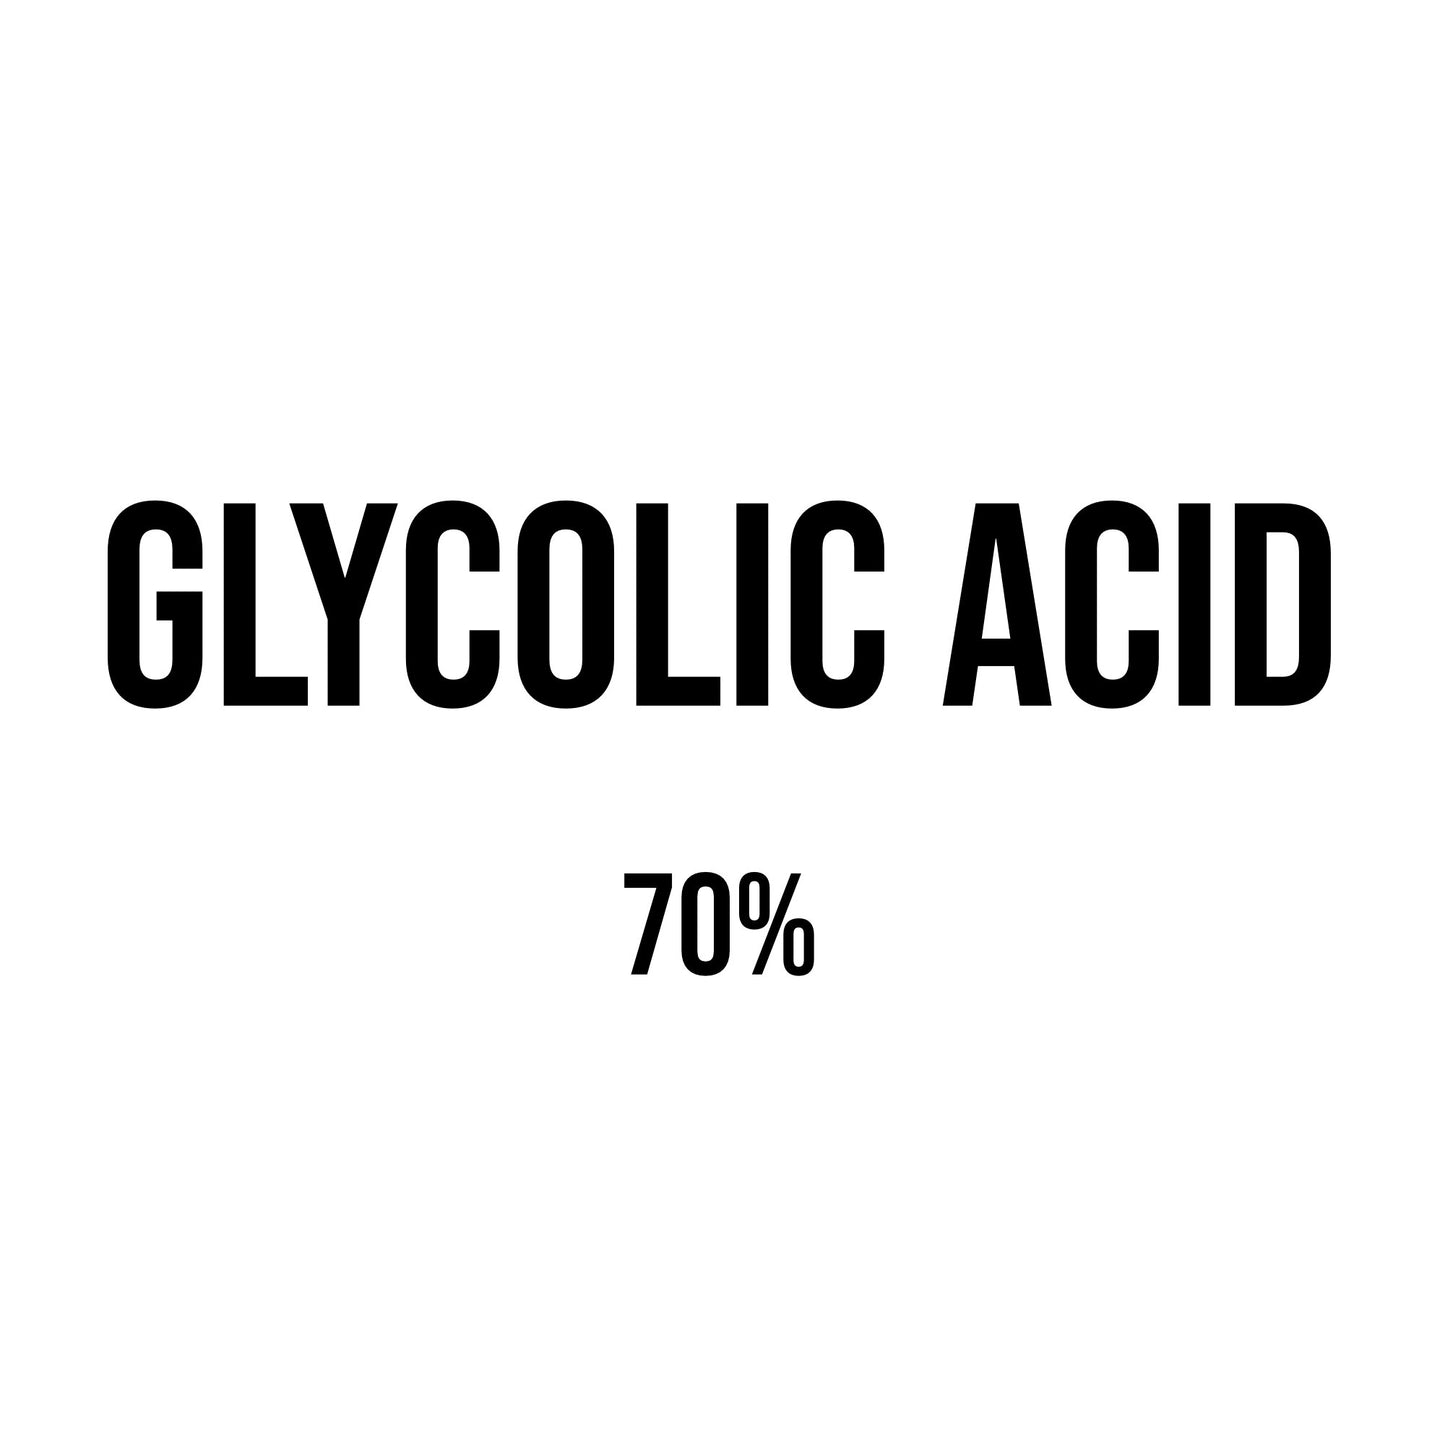 Glycolic Acid (70%)